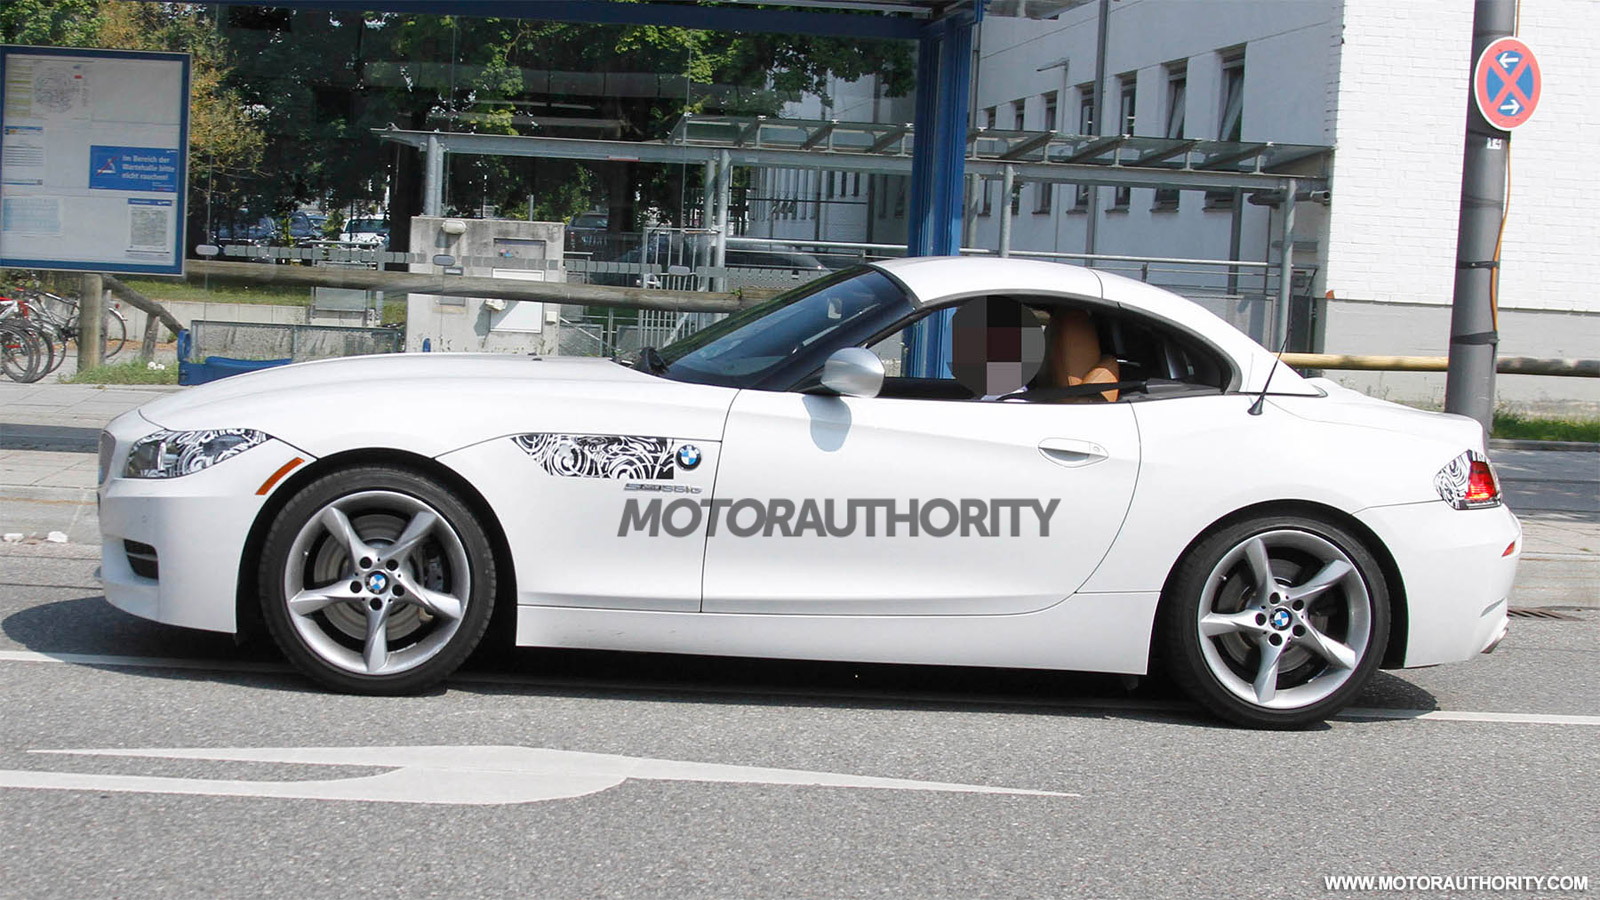 2013 BMW Z4 facelift spy shots